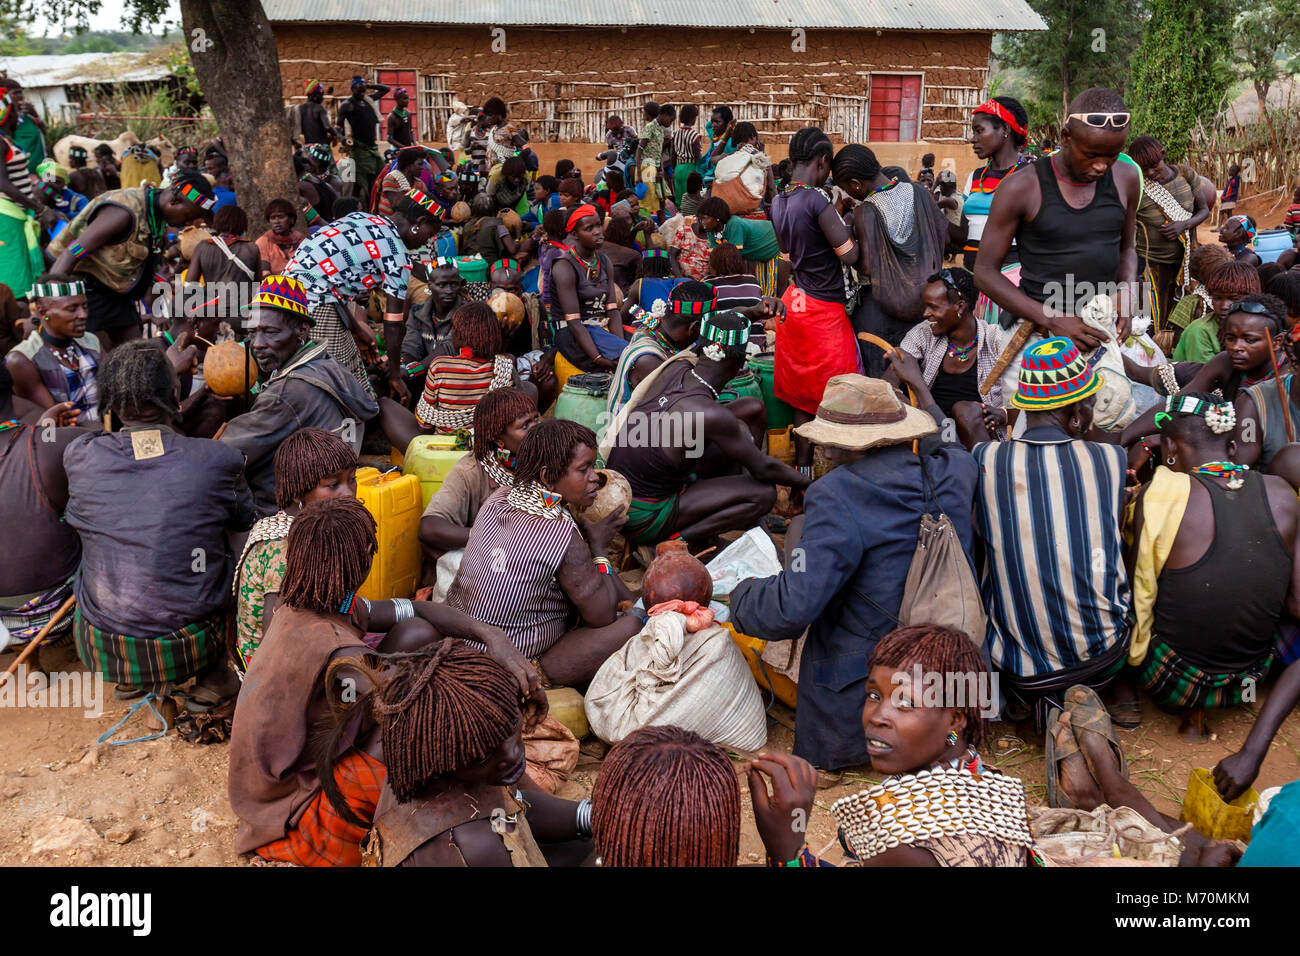 Hamer et Banna People Socializing At Le Alduba Marché Tribal, près de Keyafer, vallée de l'Omo, Ethiopie Banque D'Images